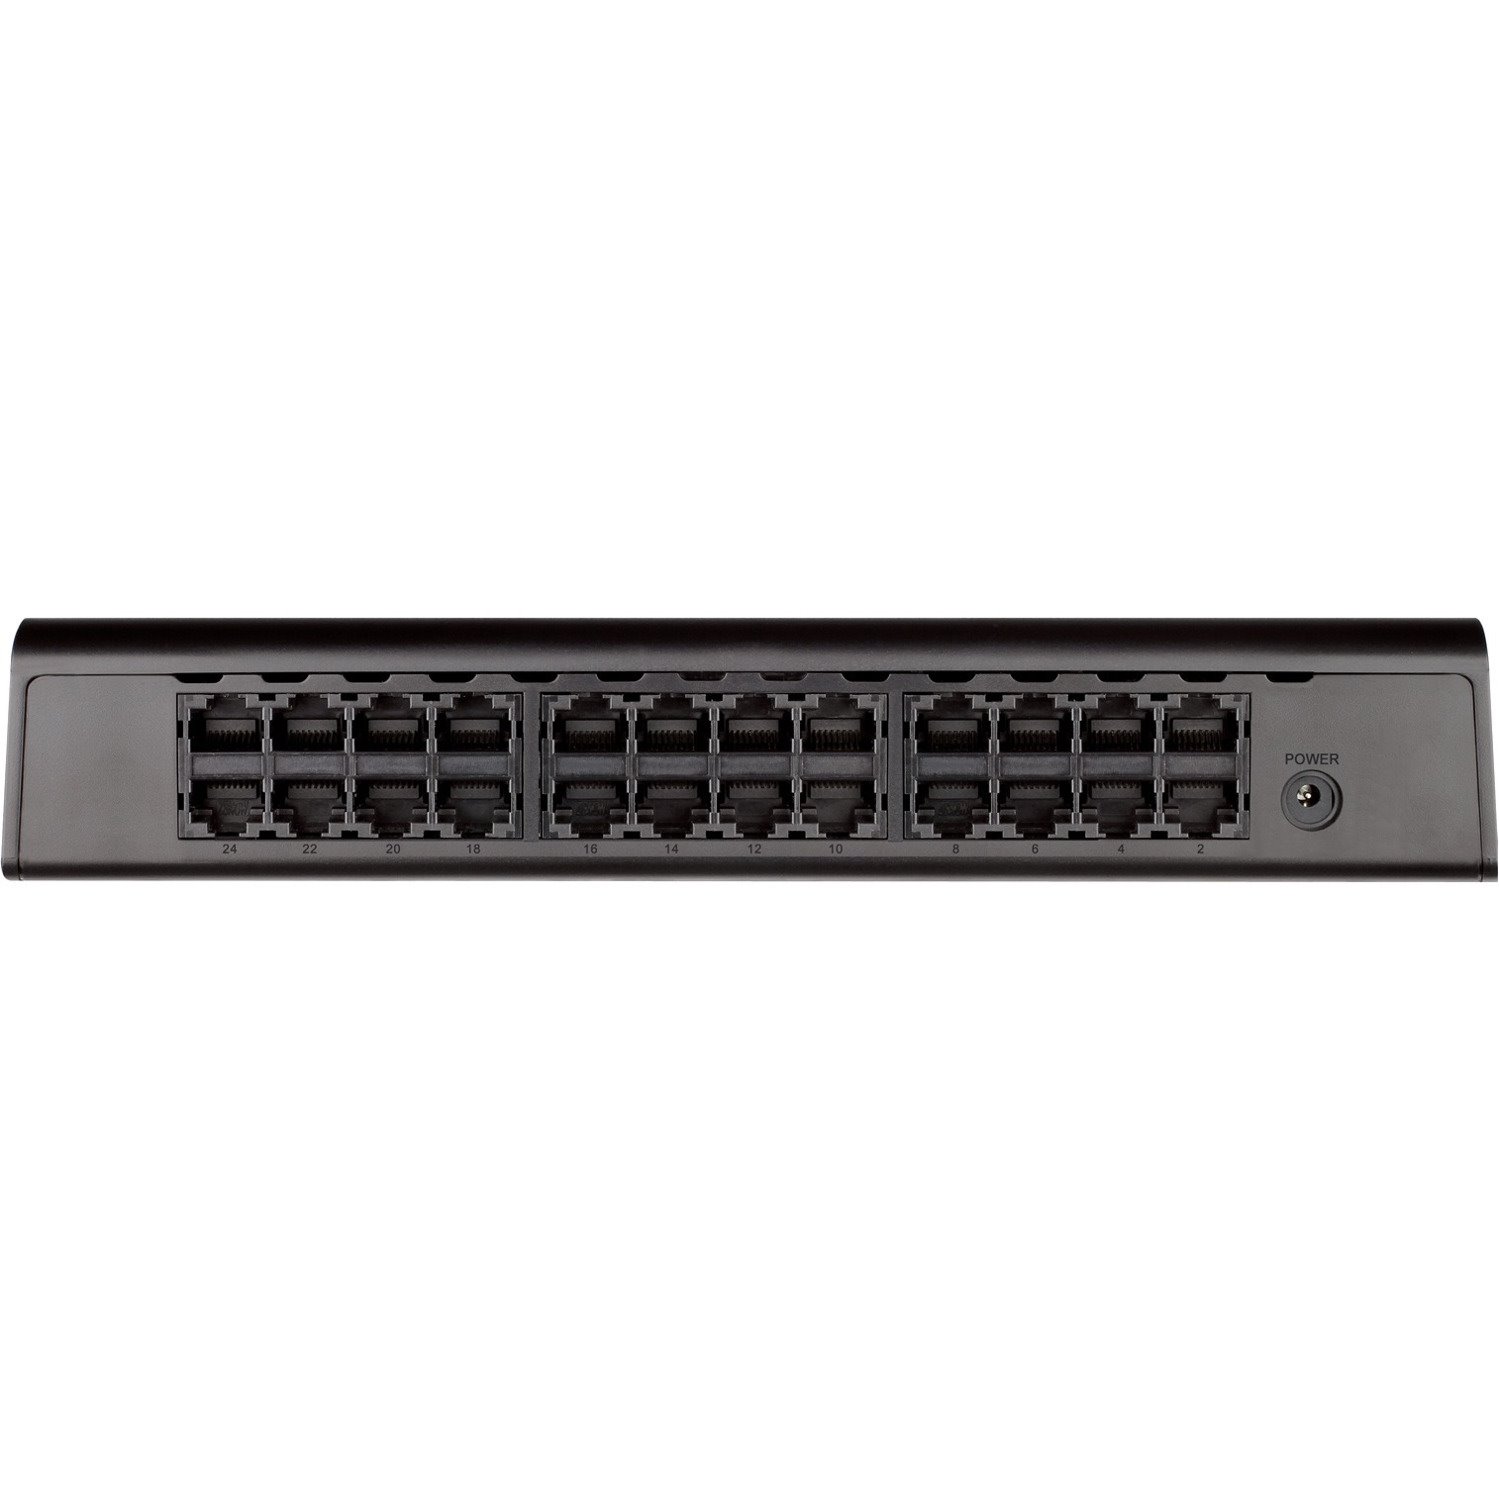 D-Link DGS-1024A 24-Port Gigabit Unmanaged Desktop Switch